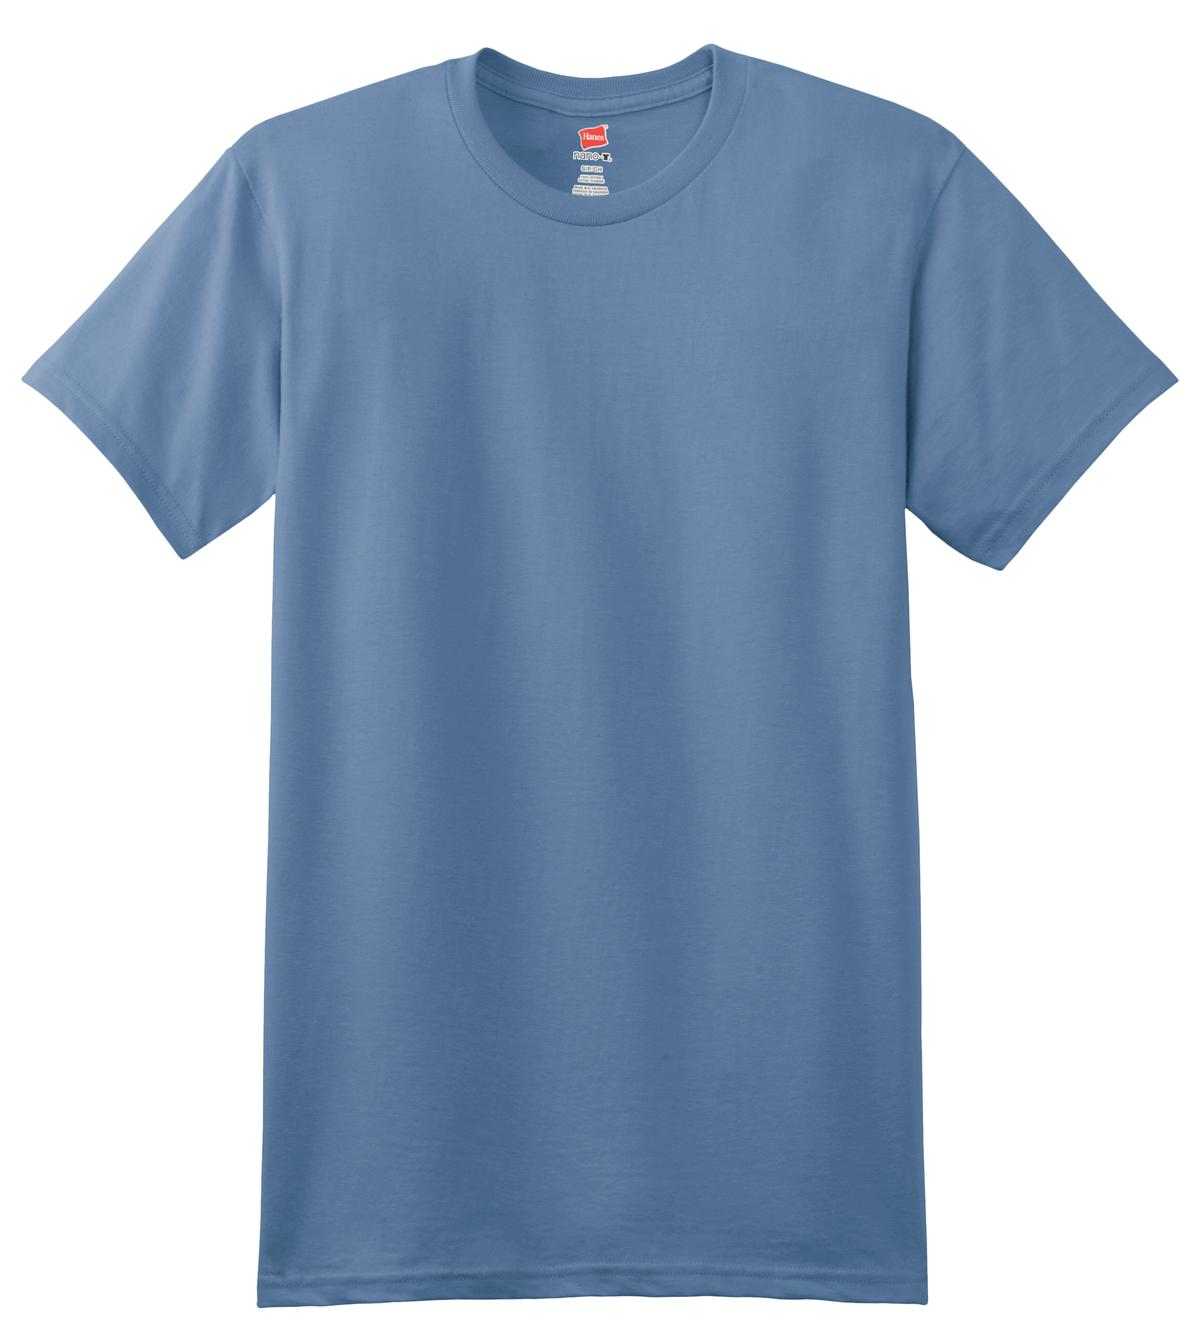 Hanes 4980 Nano-T Cotton T-Shirt - Denim Blue - HIT a Double